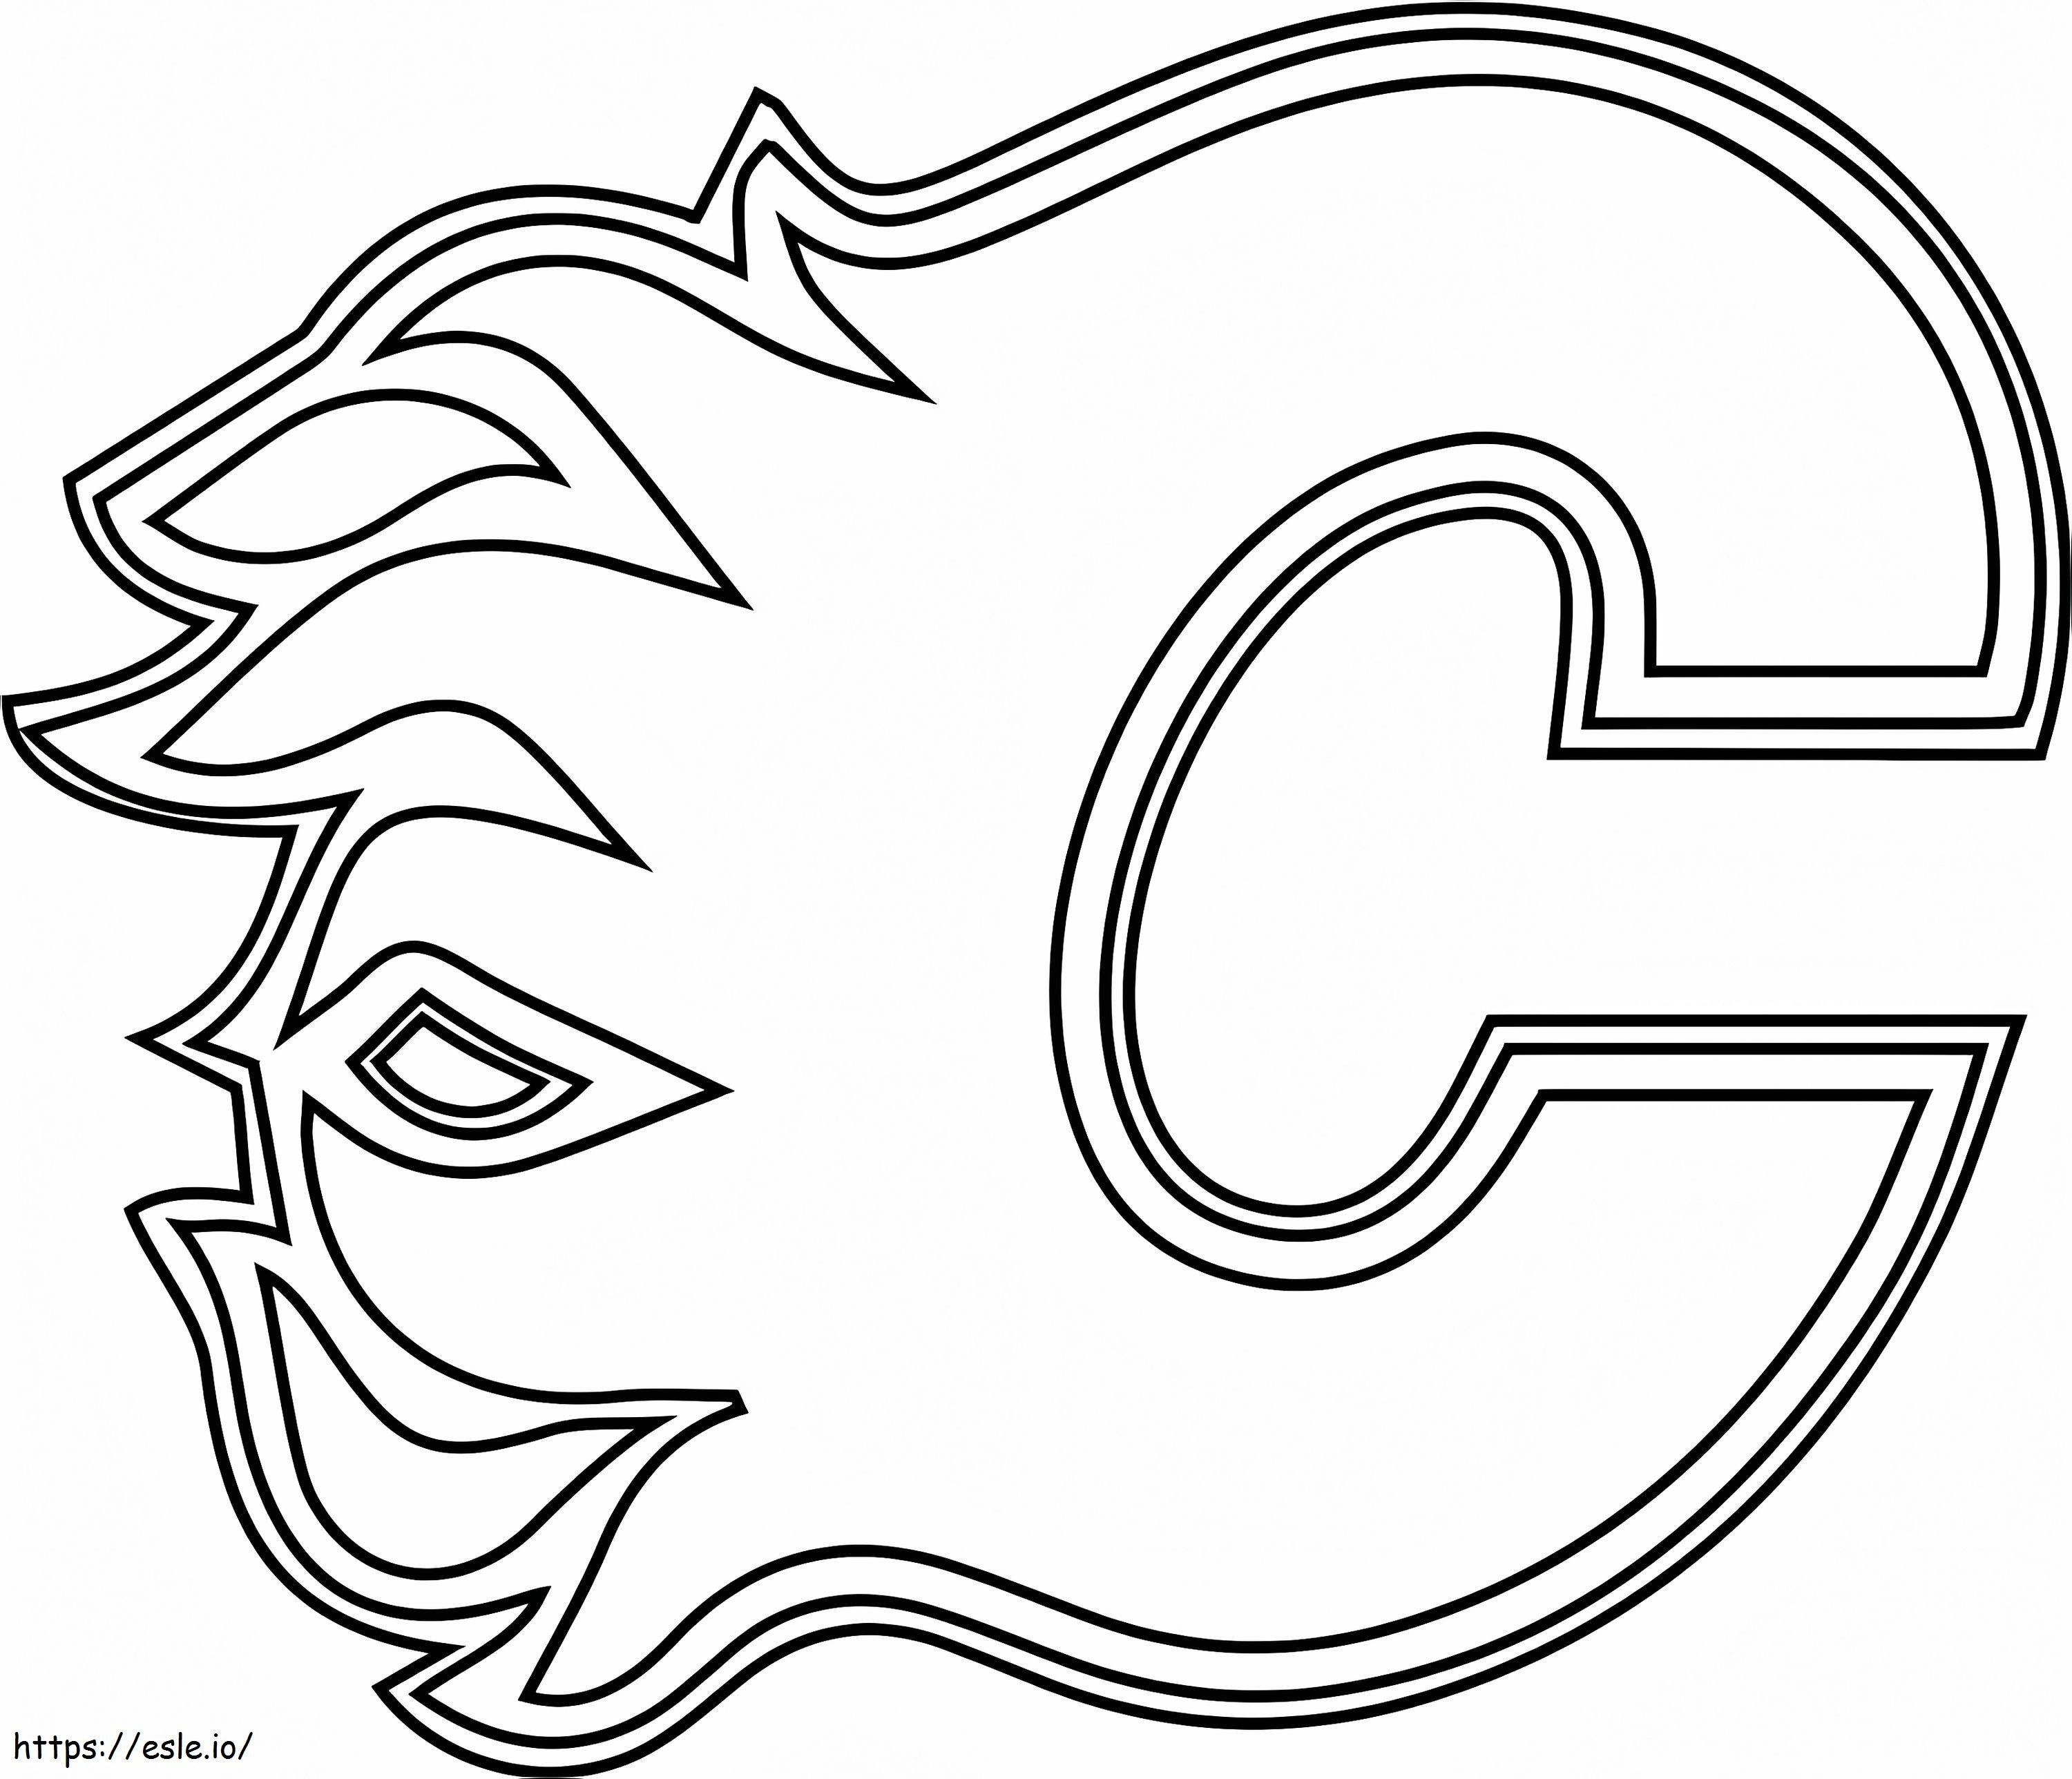 Logotipo de las llamas de Calgary para colorear